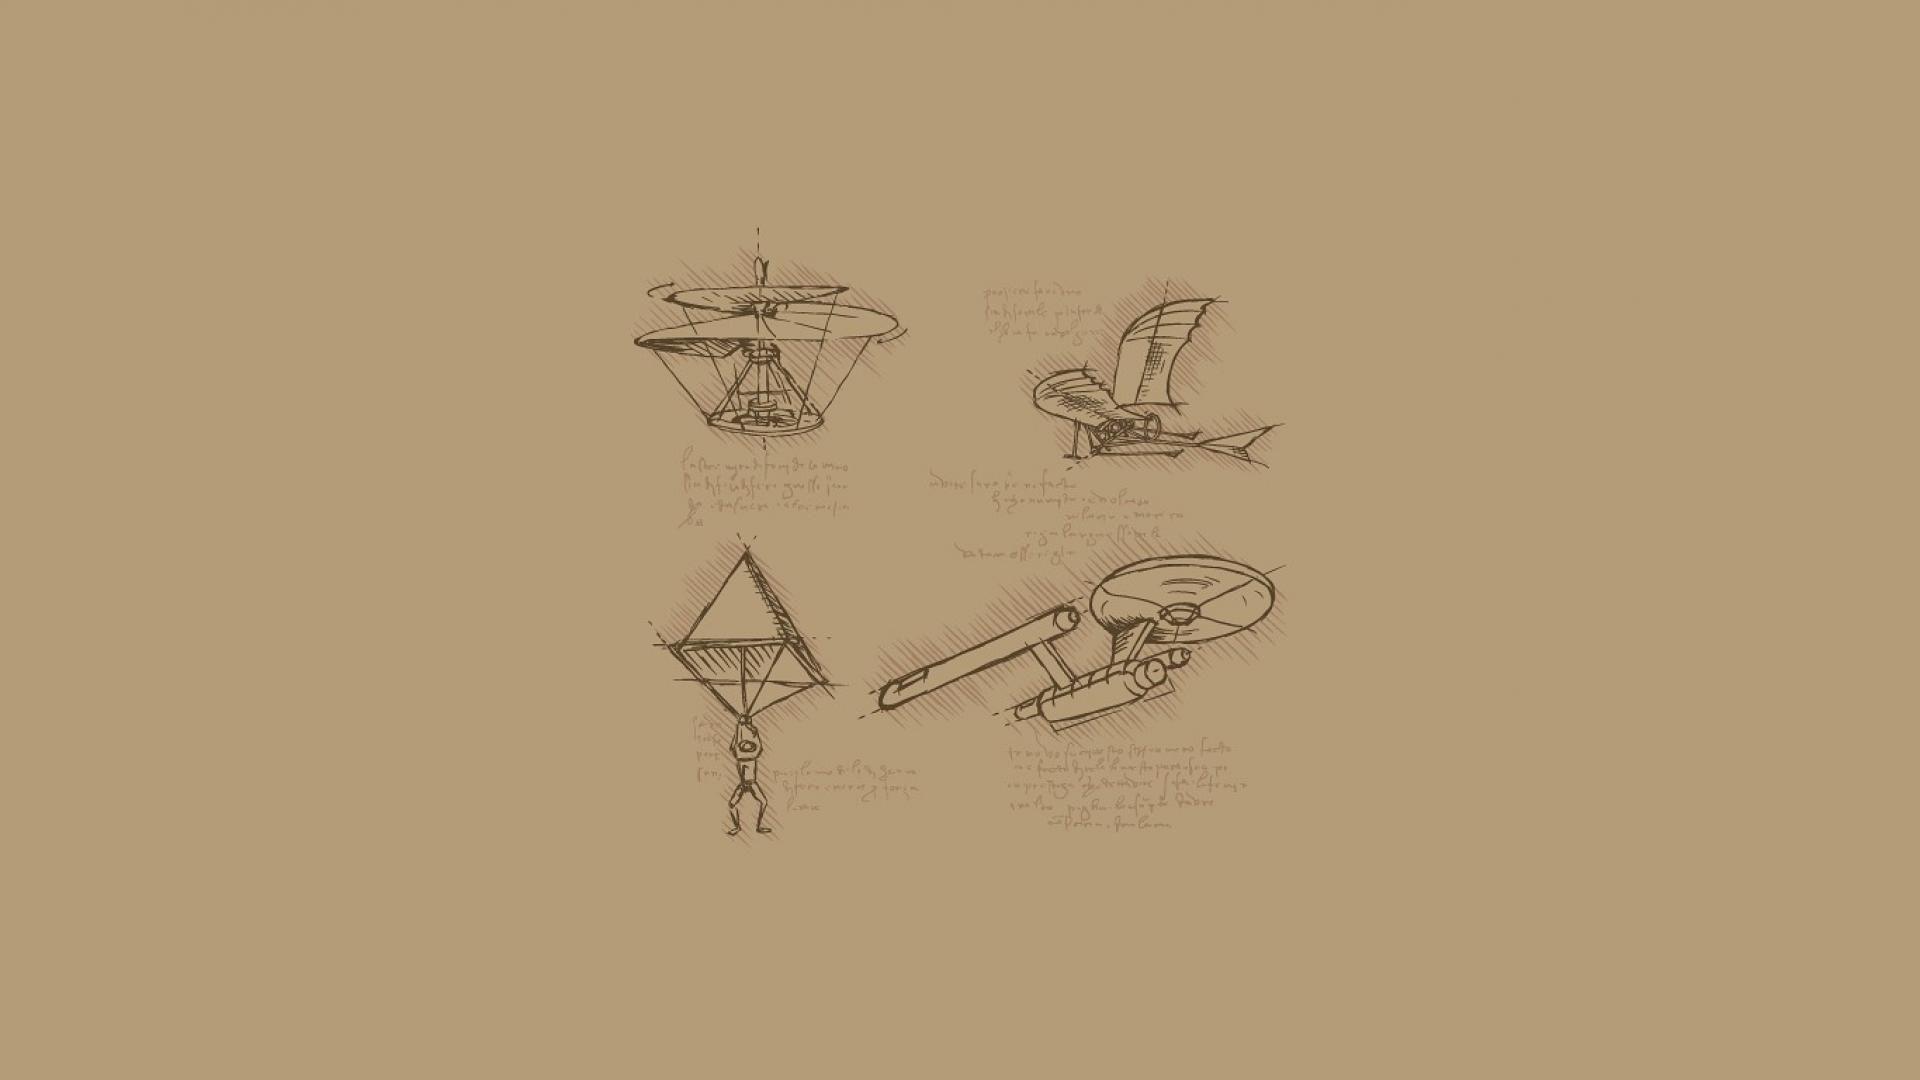 نسخه مینیاتوری چتر نجات هرون شکل لئوناردو داوینچی و ماشین پرنده از اختراعات لئوناردو داوینچی